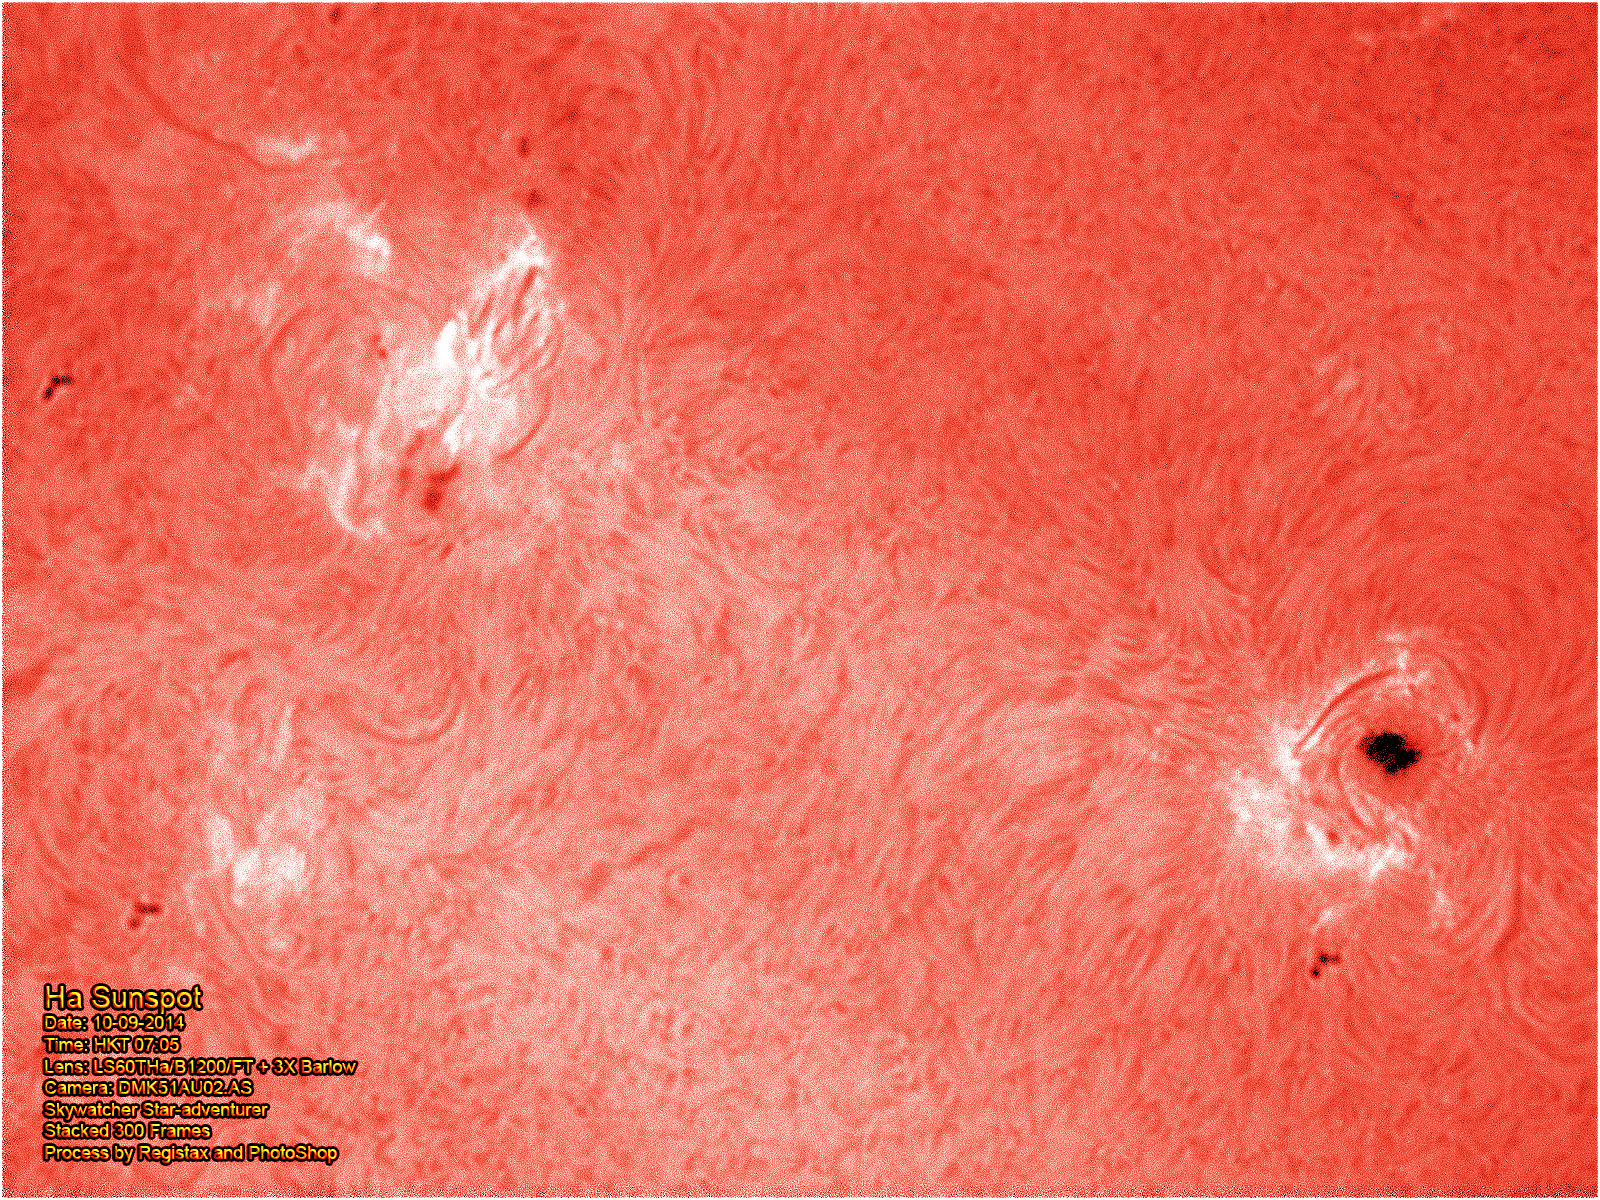 Ha Sunspot 2014-09-10 07-05-09.jpg